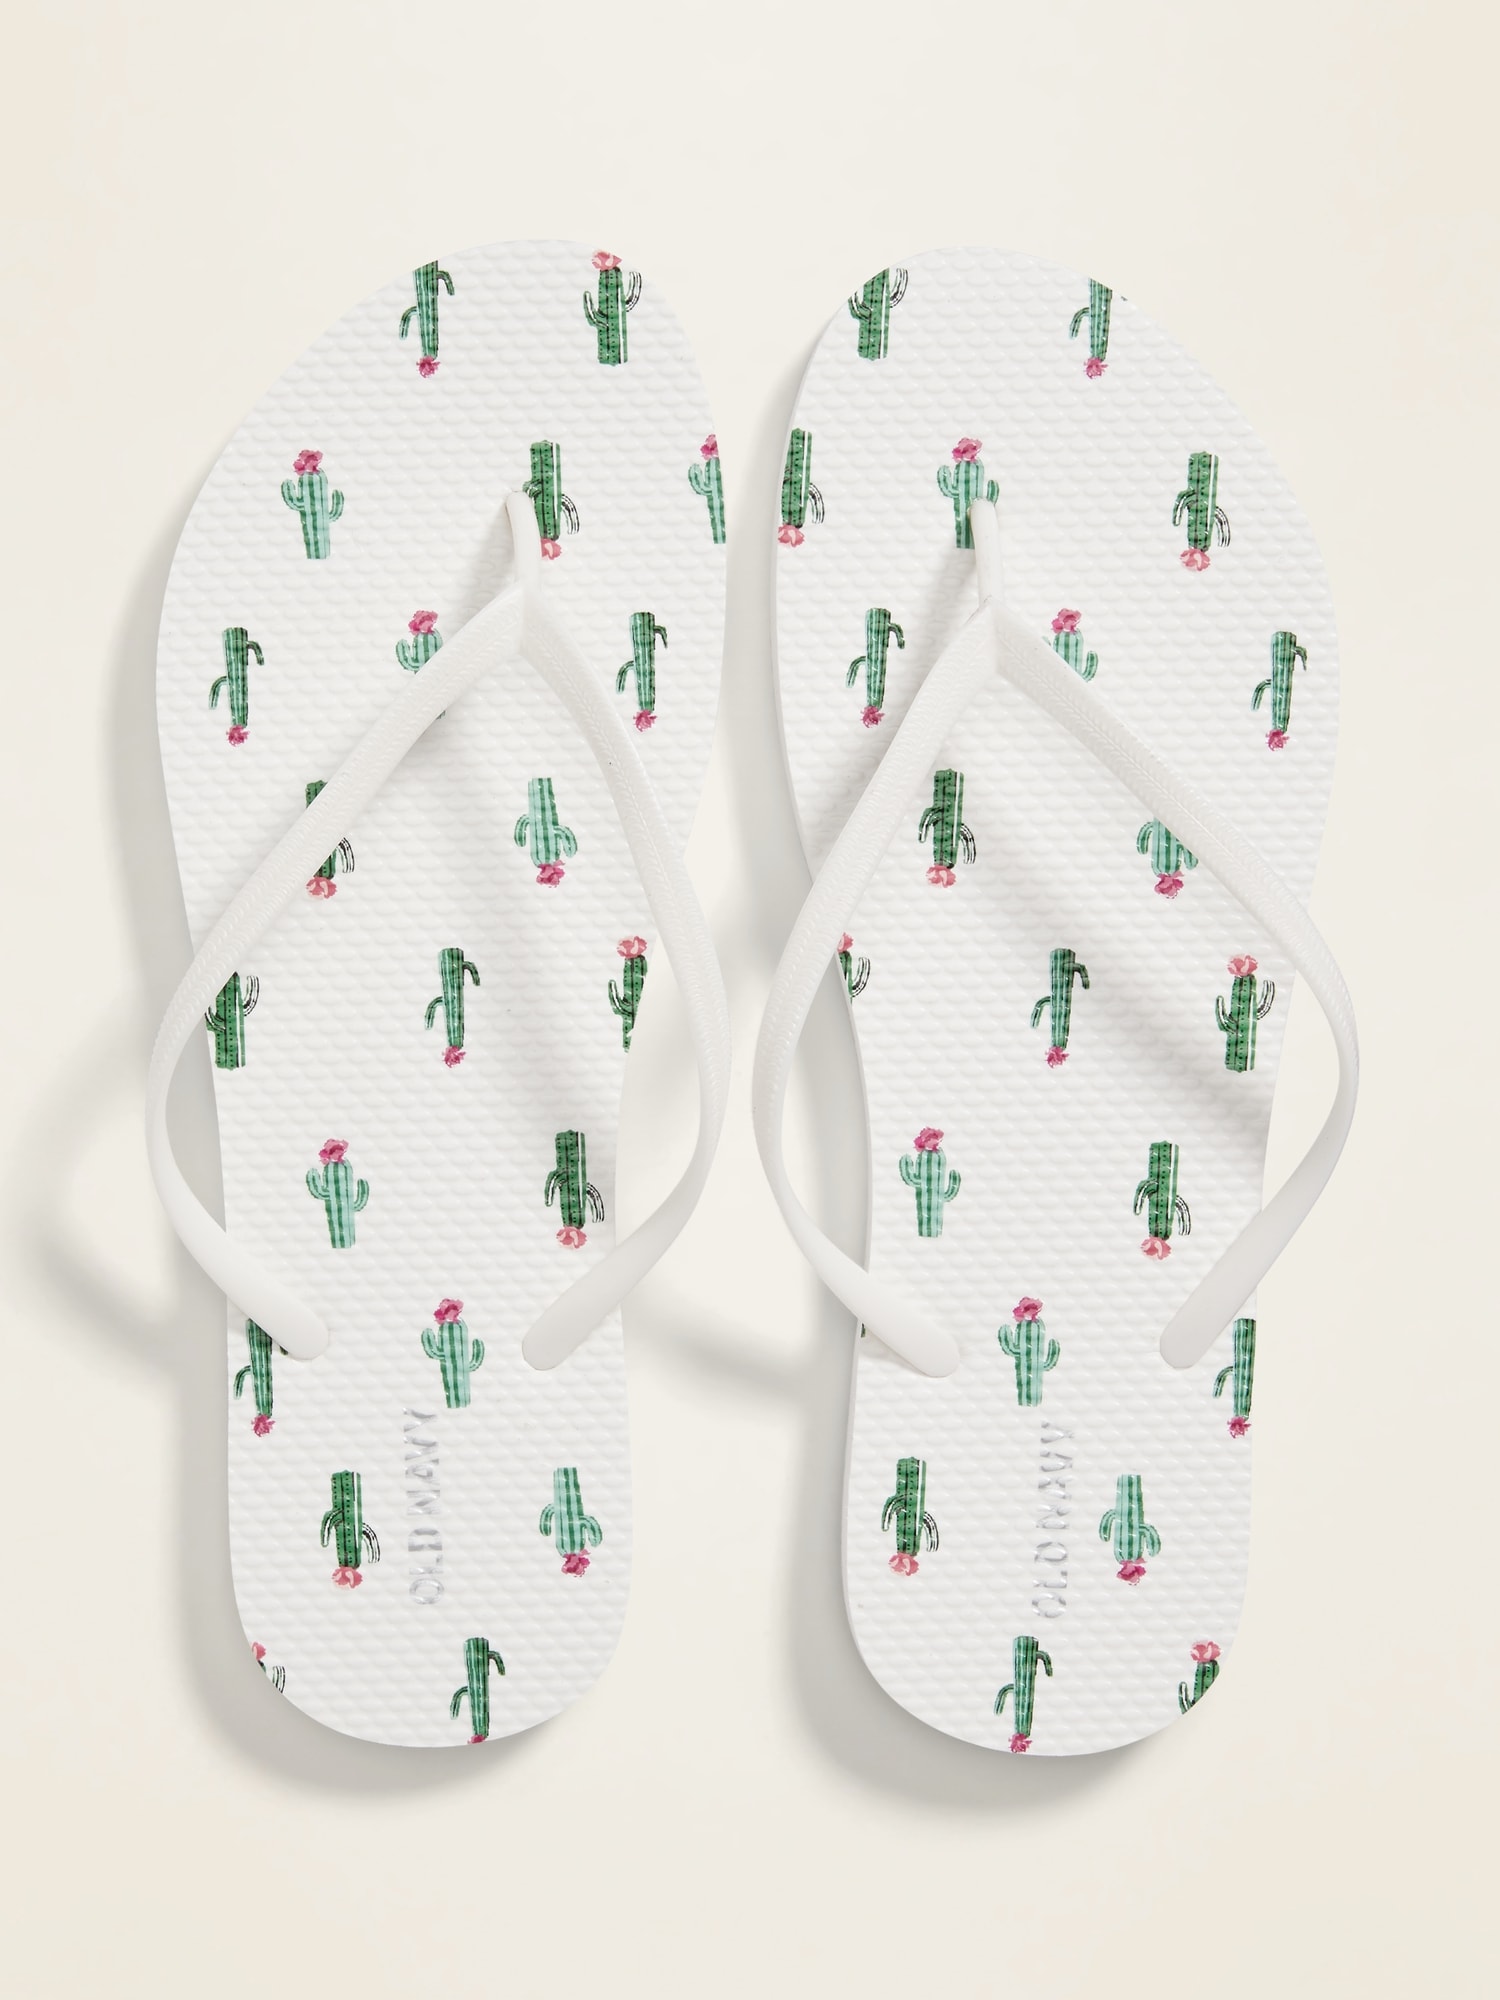 patterned flip flops